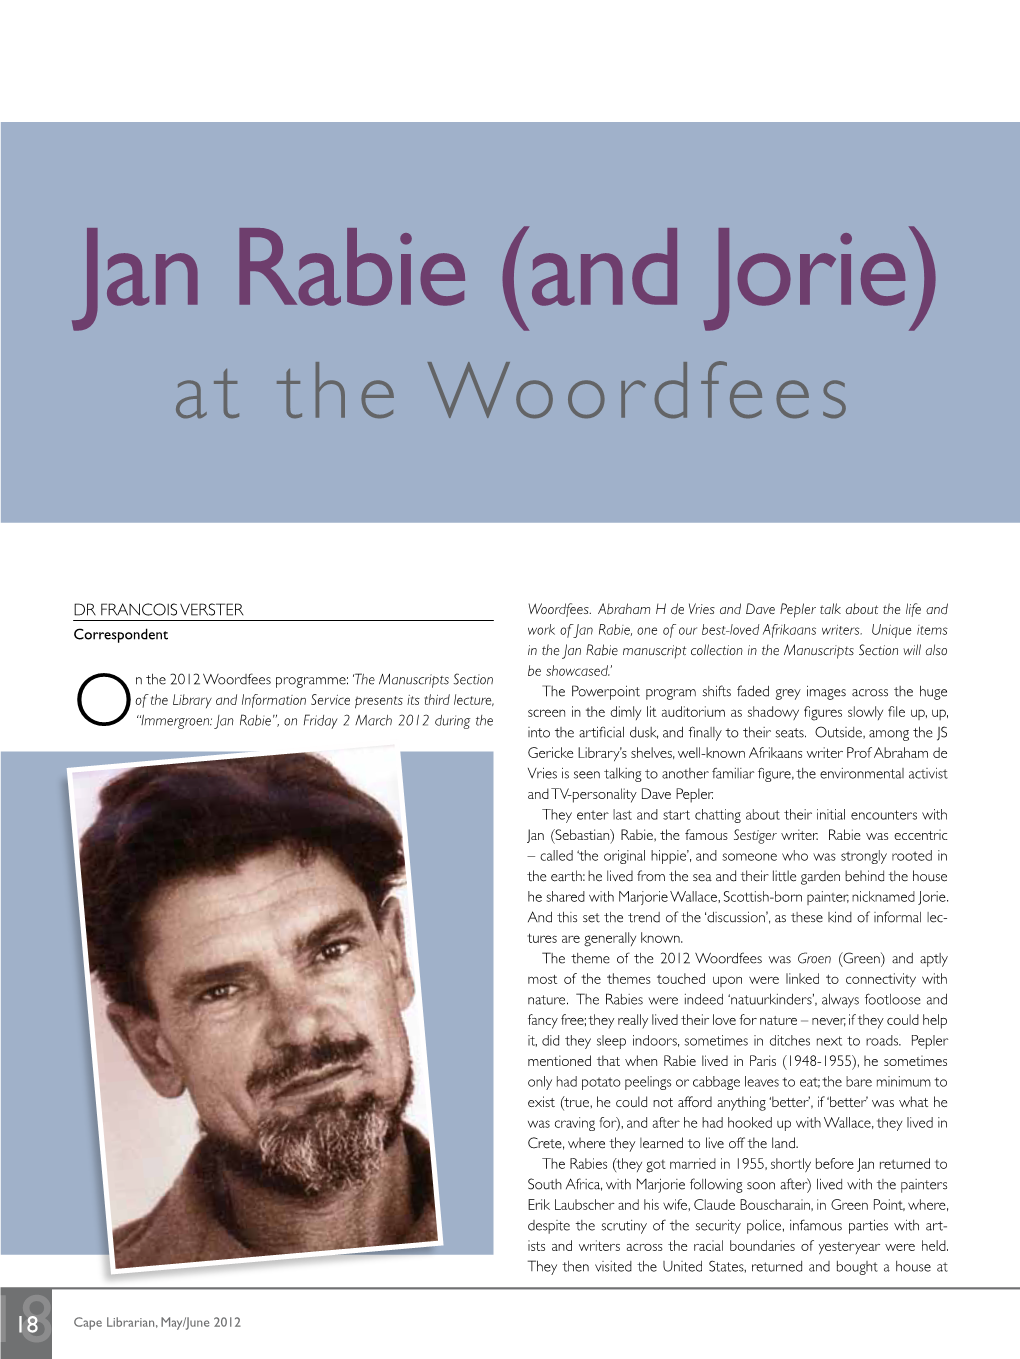 Jan Rabie (And Jorie) at the Woordfees